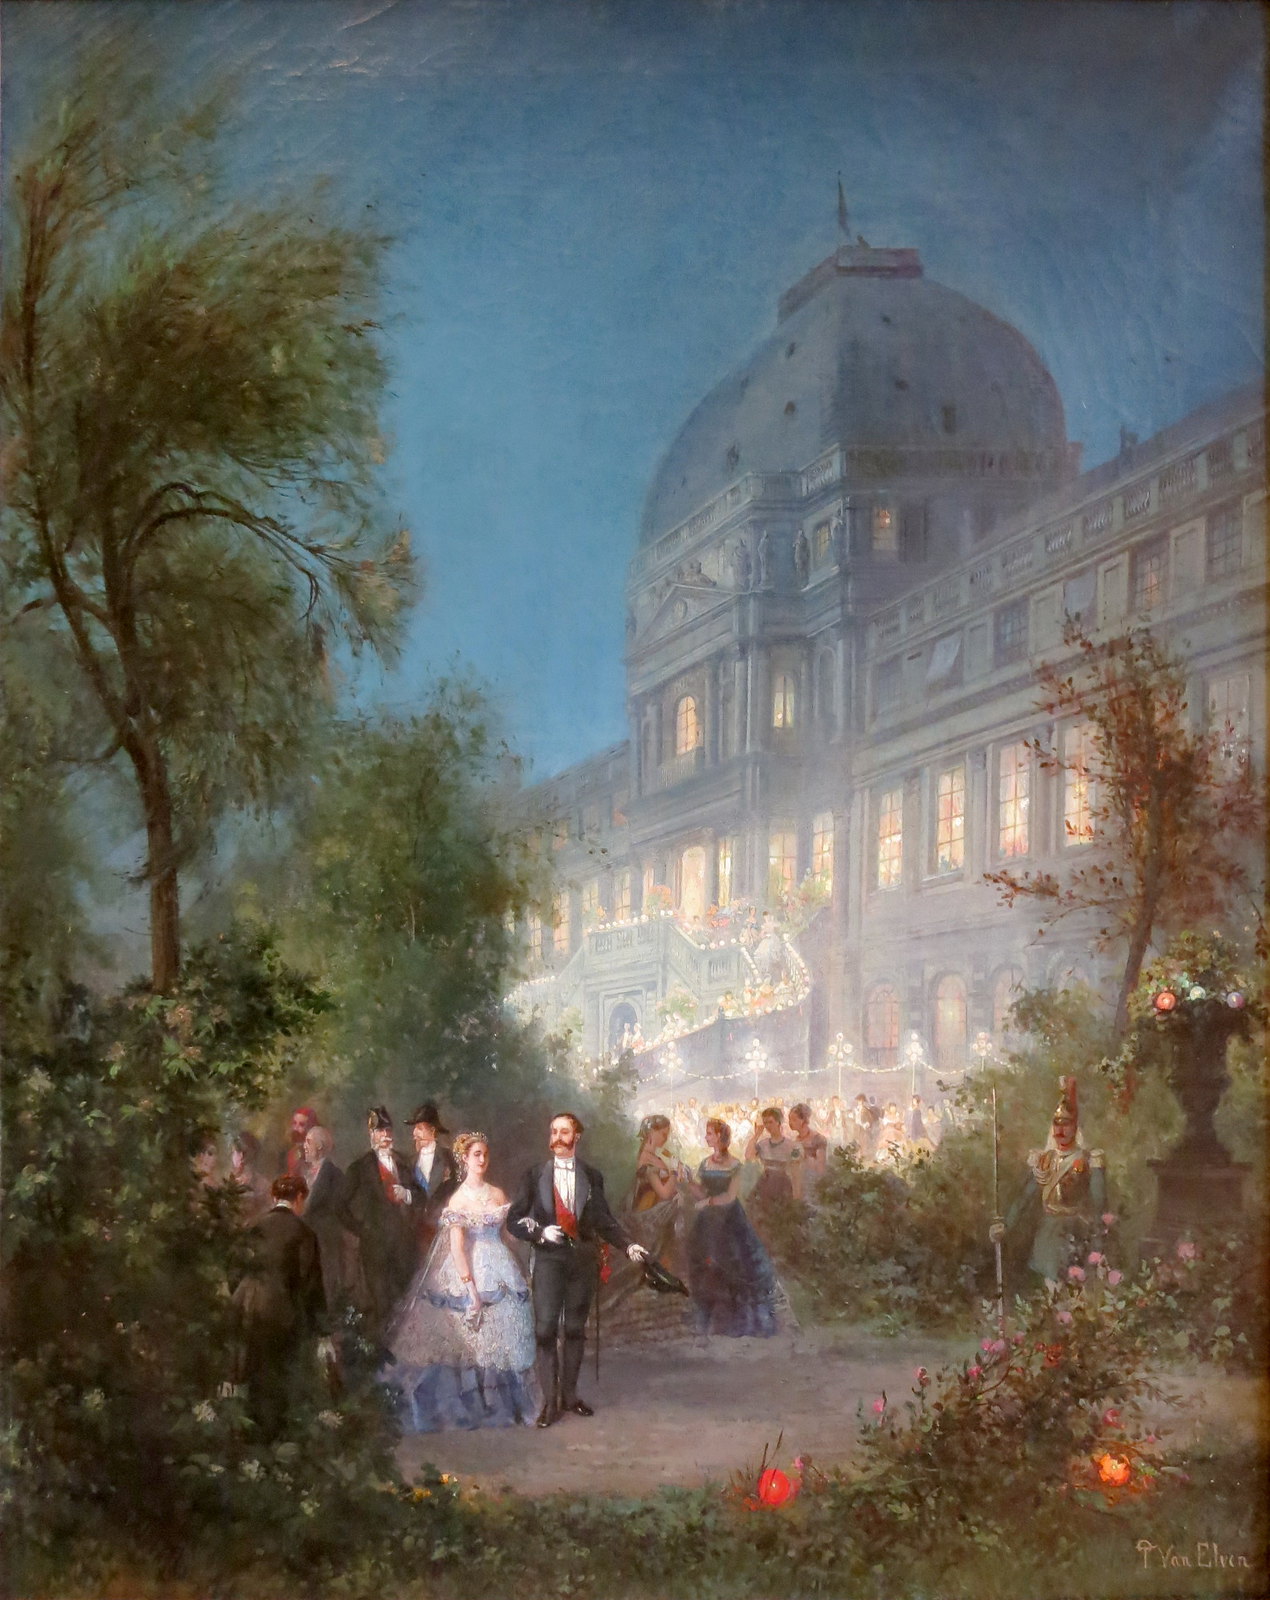 Party night at the Tuileries, June 10, 1867 by Pierre Tetar van Elven, 1867.